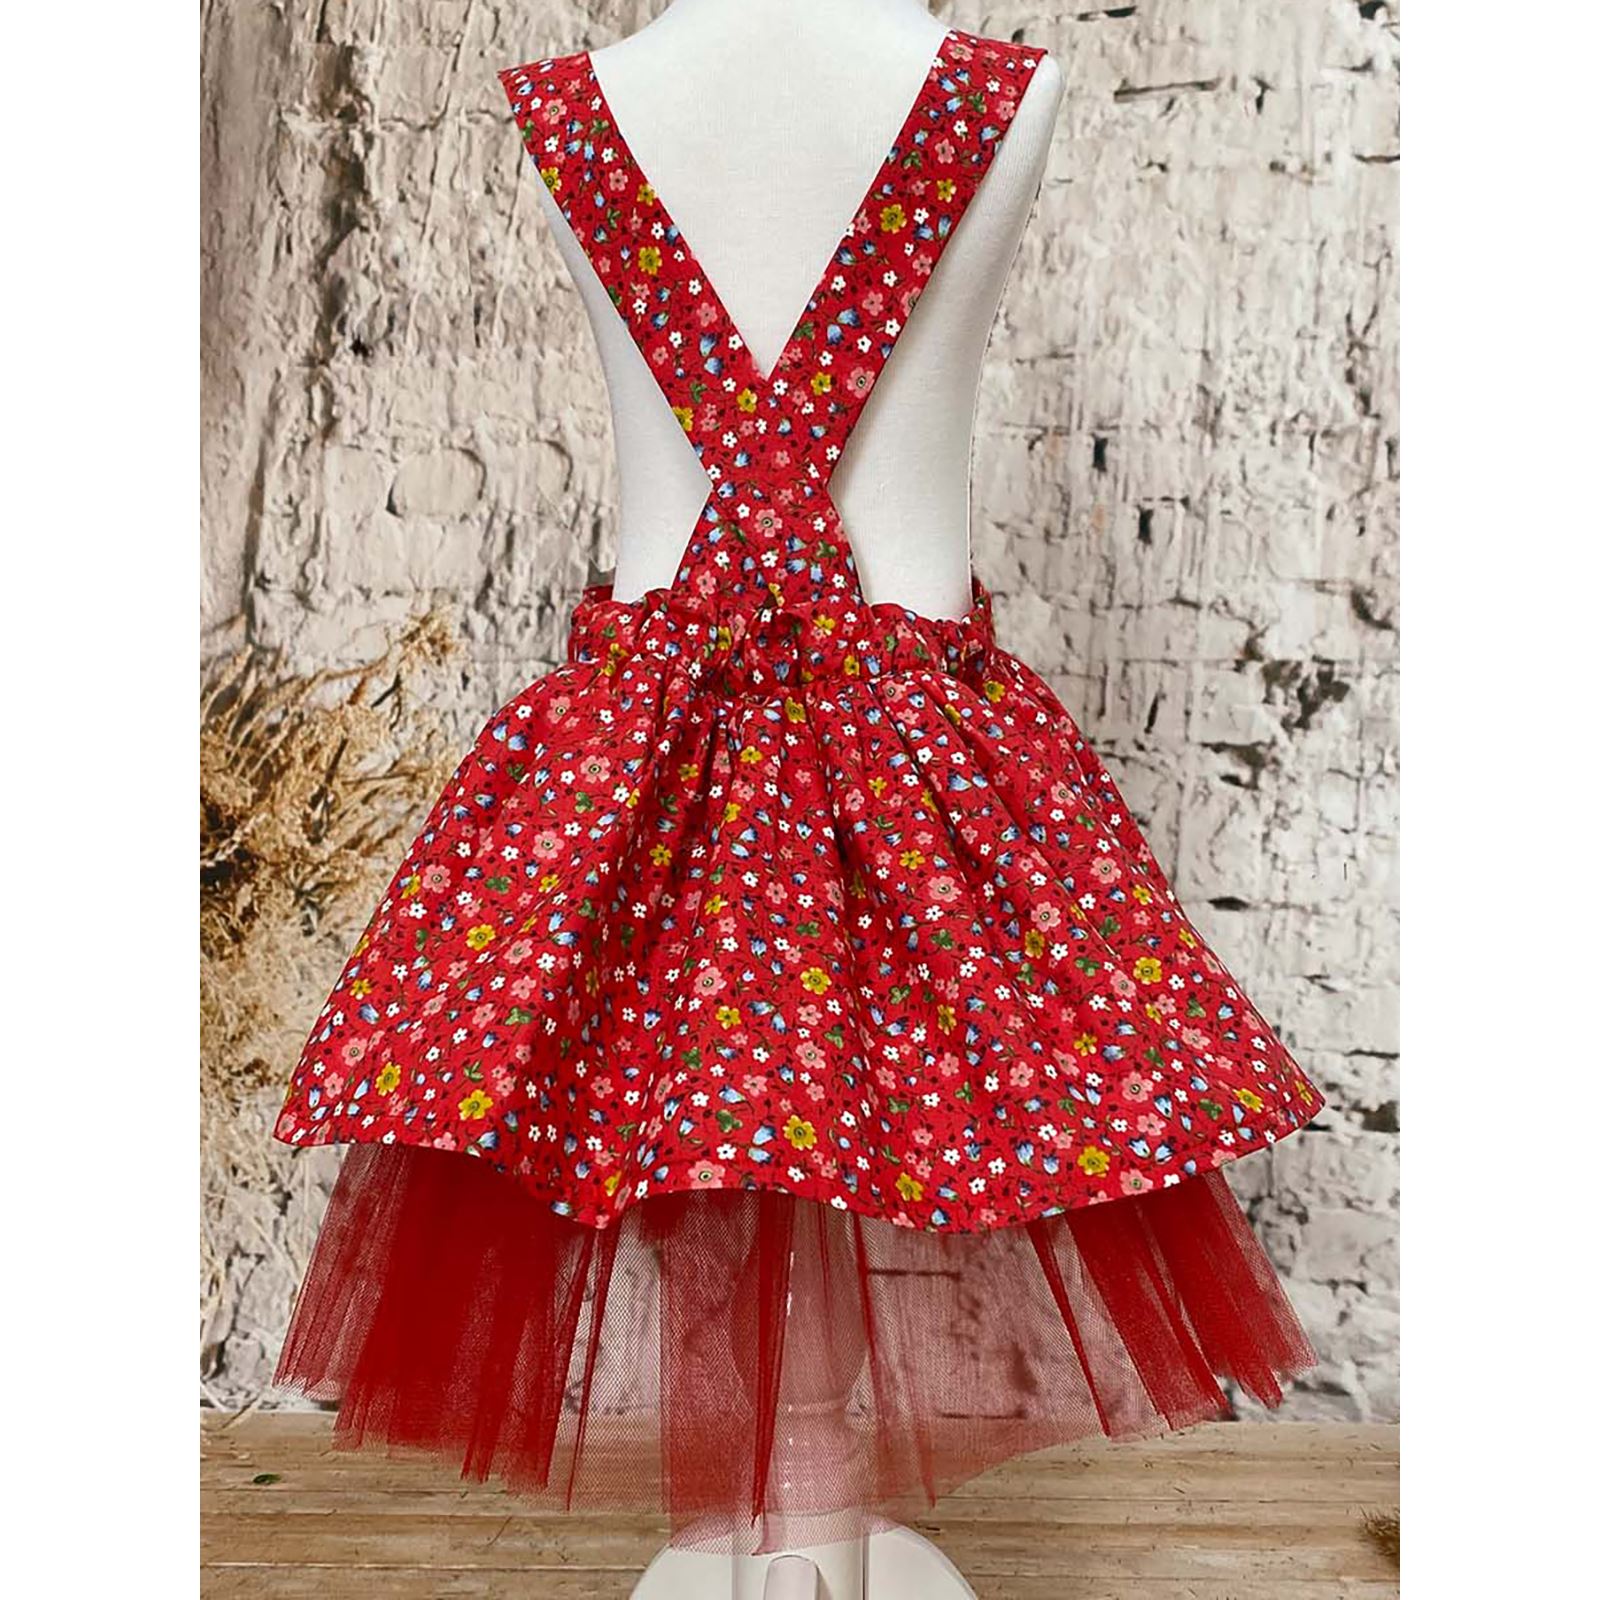 Shecco Babba Kız Çocuk Elbise Bandana Takım Çiçekli 6-10 Yaş Kırmızı